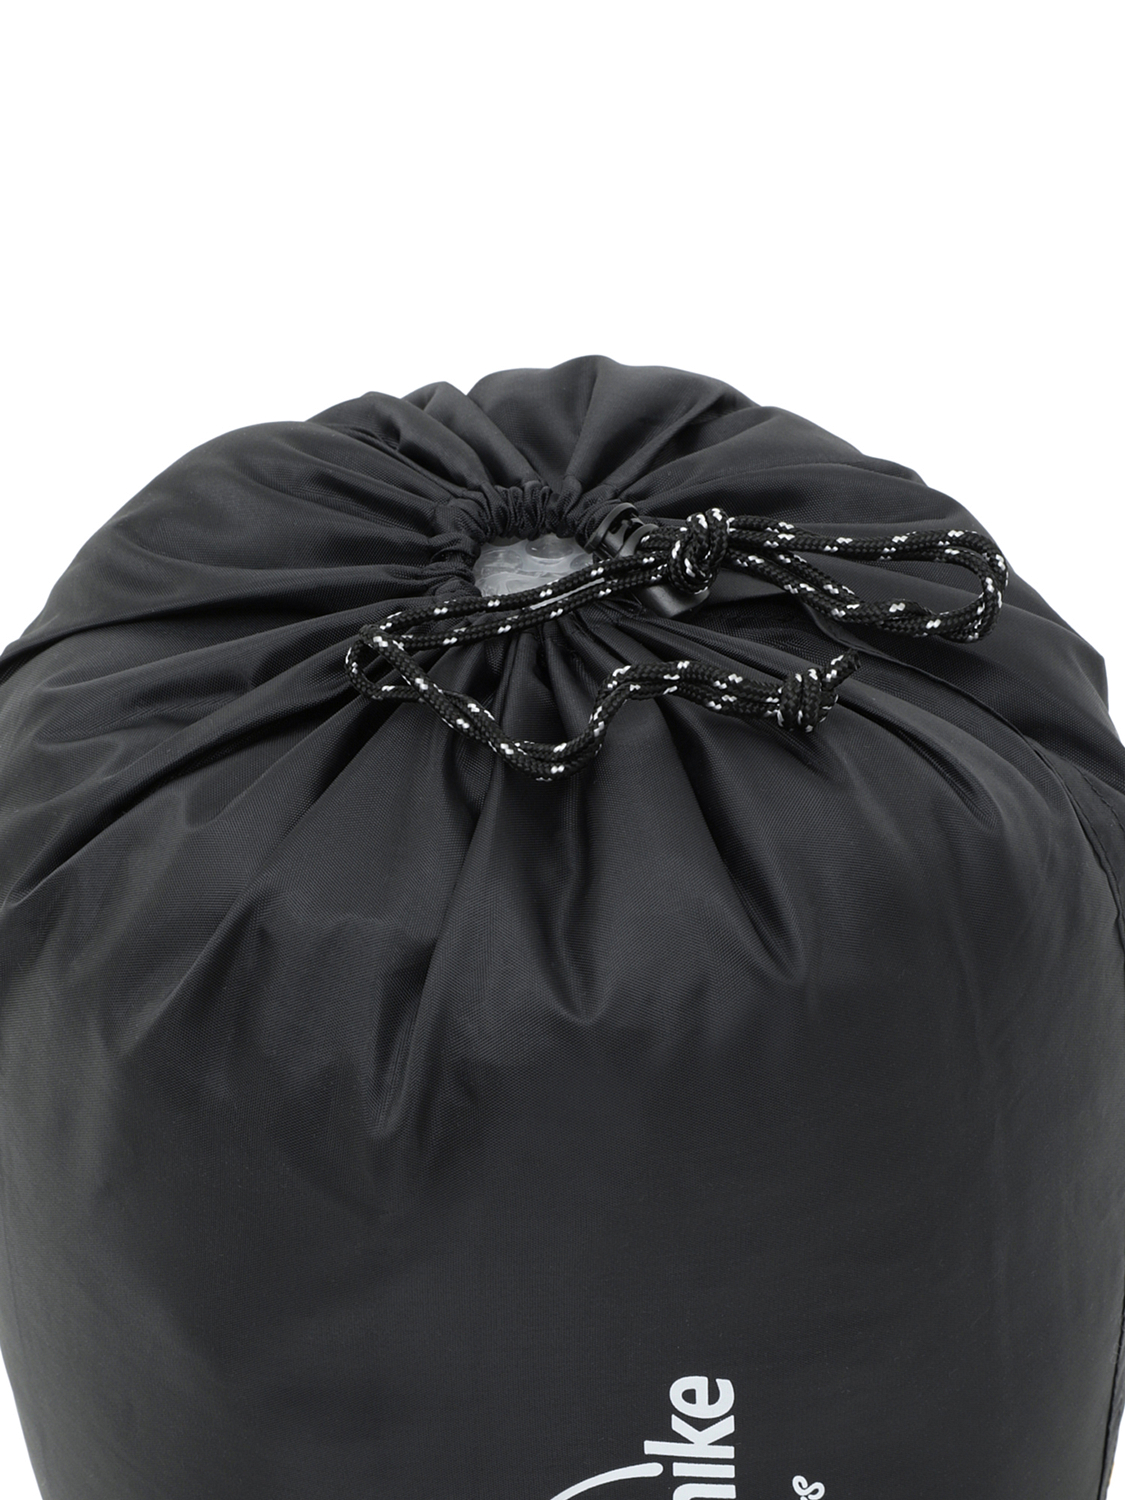 Мешок компрессионный Naturehike Compression Bag For Sleeping Bag, S Black